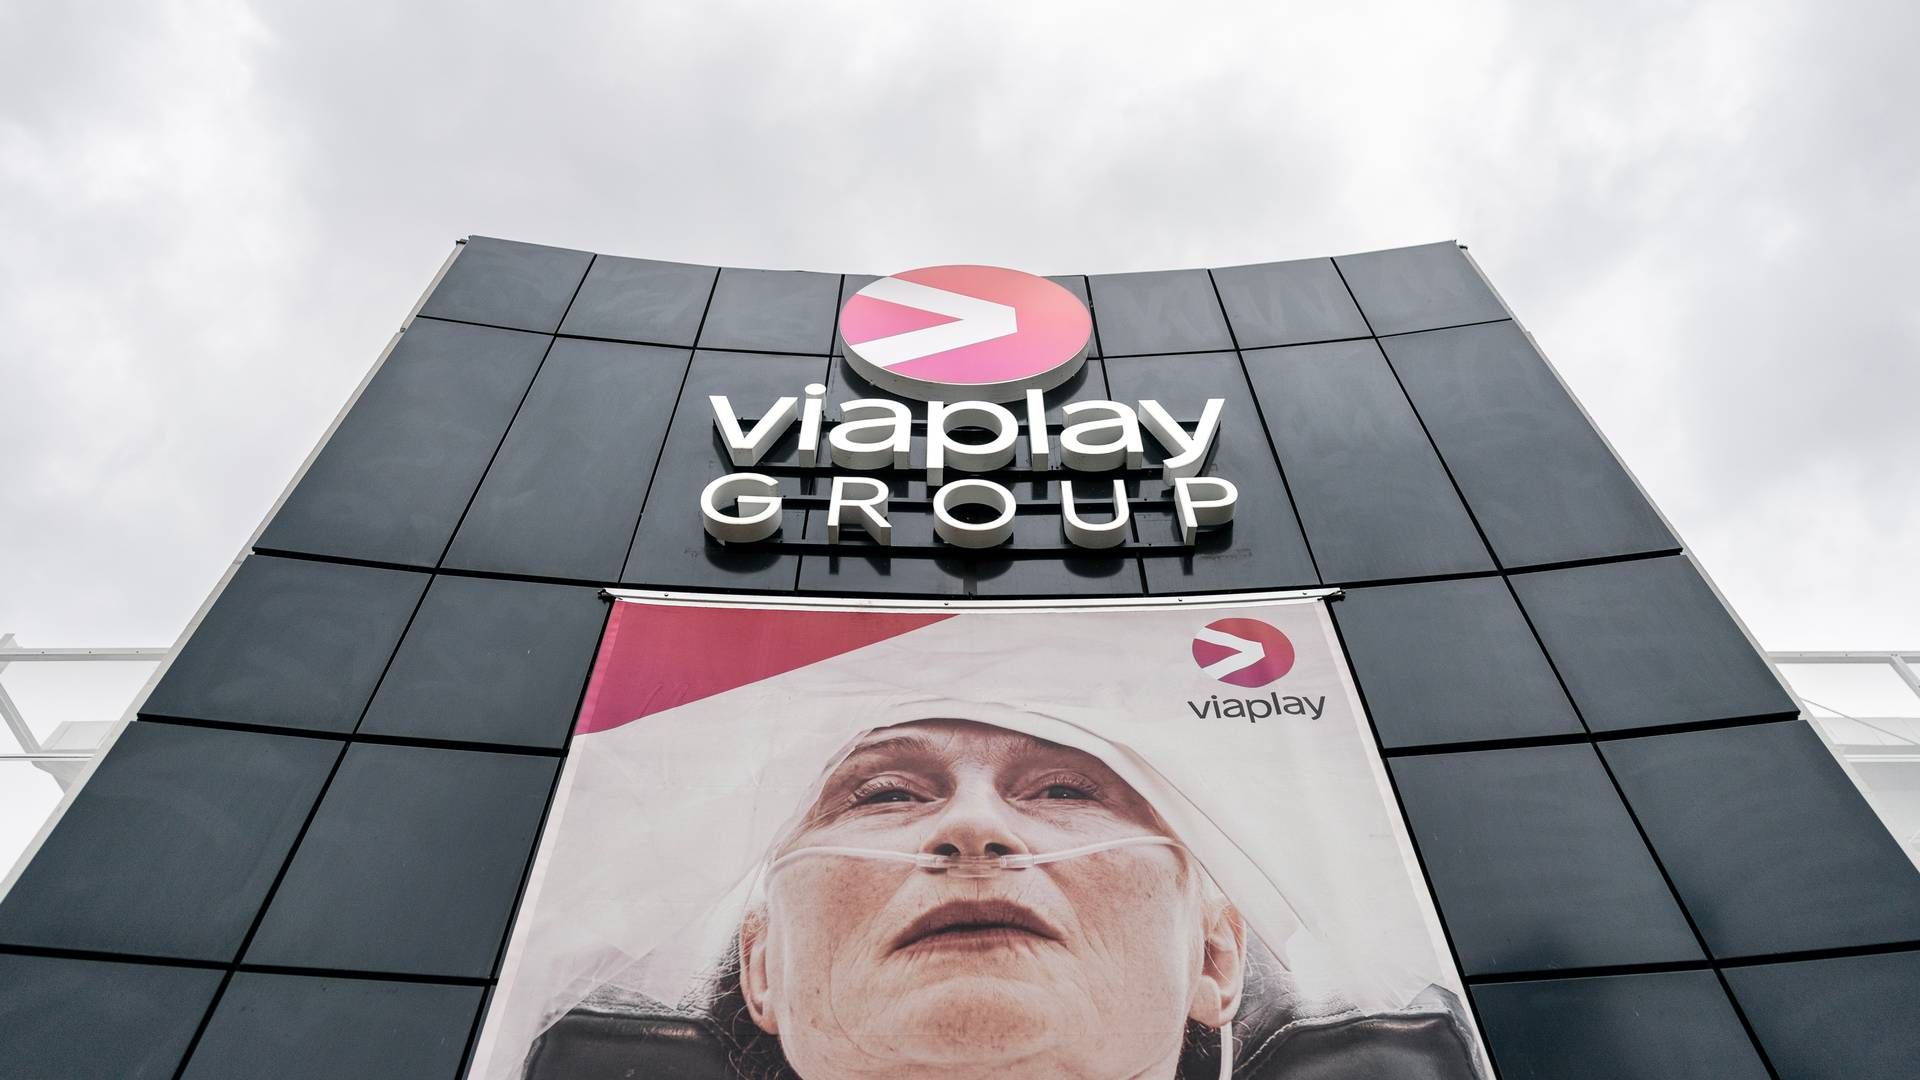 Viaplay har tilbagekaldt tidligere udmeldte forventninger til 2023 efter en gennemgang af koncernens aktiviteter viser markant lavere udsigt til omsætningsudviklingen end ventet. | Foto: Rasmus Flindt Pedersen